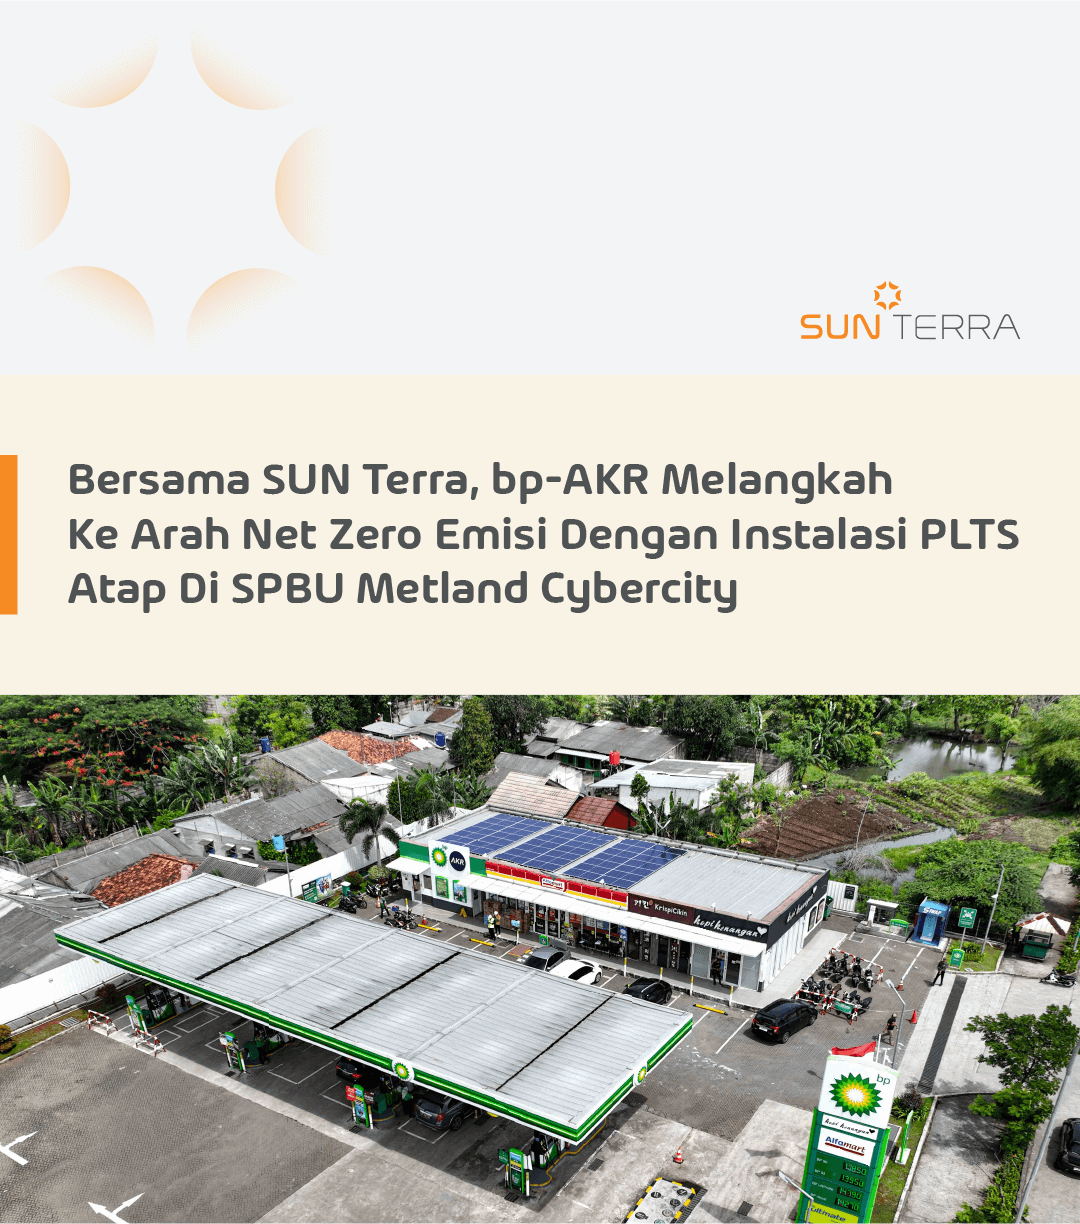 Bersama SUN Terra, bp-AKR Melangkah Ke Arah Net Zero Emisi Dengan Instalasi PLTS Atap Di SPBU Metland Cybercity